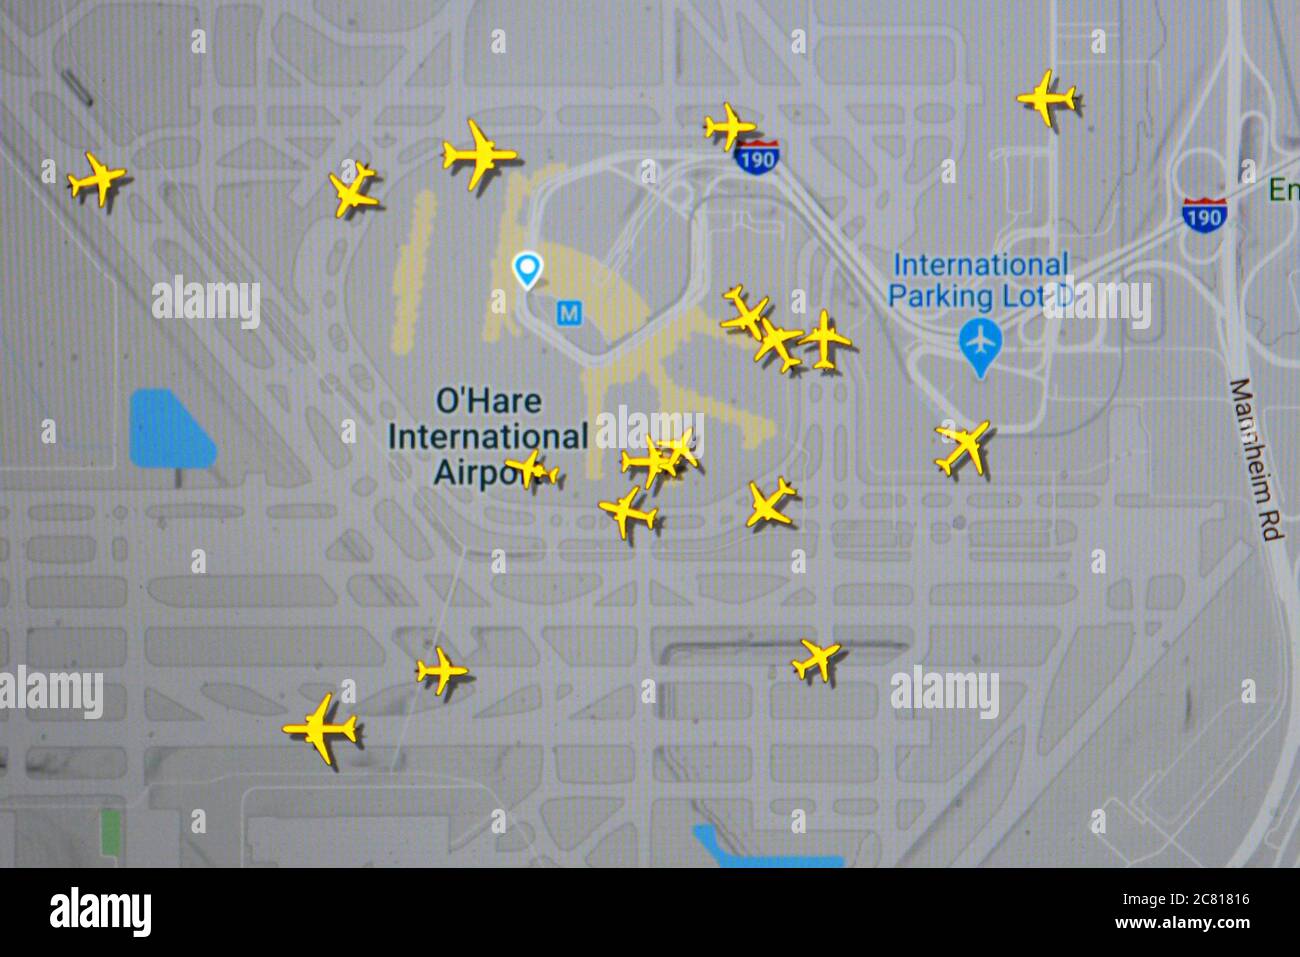 Traffico aereo sull'aeroporto di Chicago 0 Hare (18 luglio 2020, UTC 16.51) su Internet con il sito Flightradar 24, durante il Coronavirus Pandemic Foto Stock